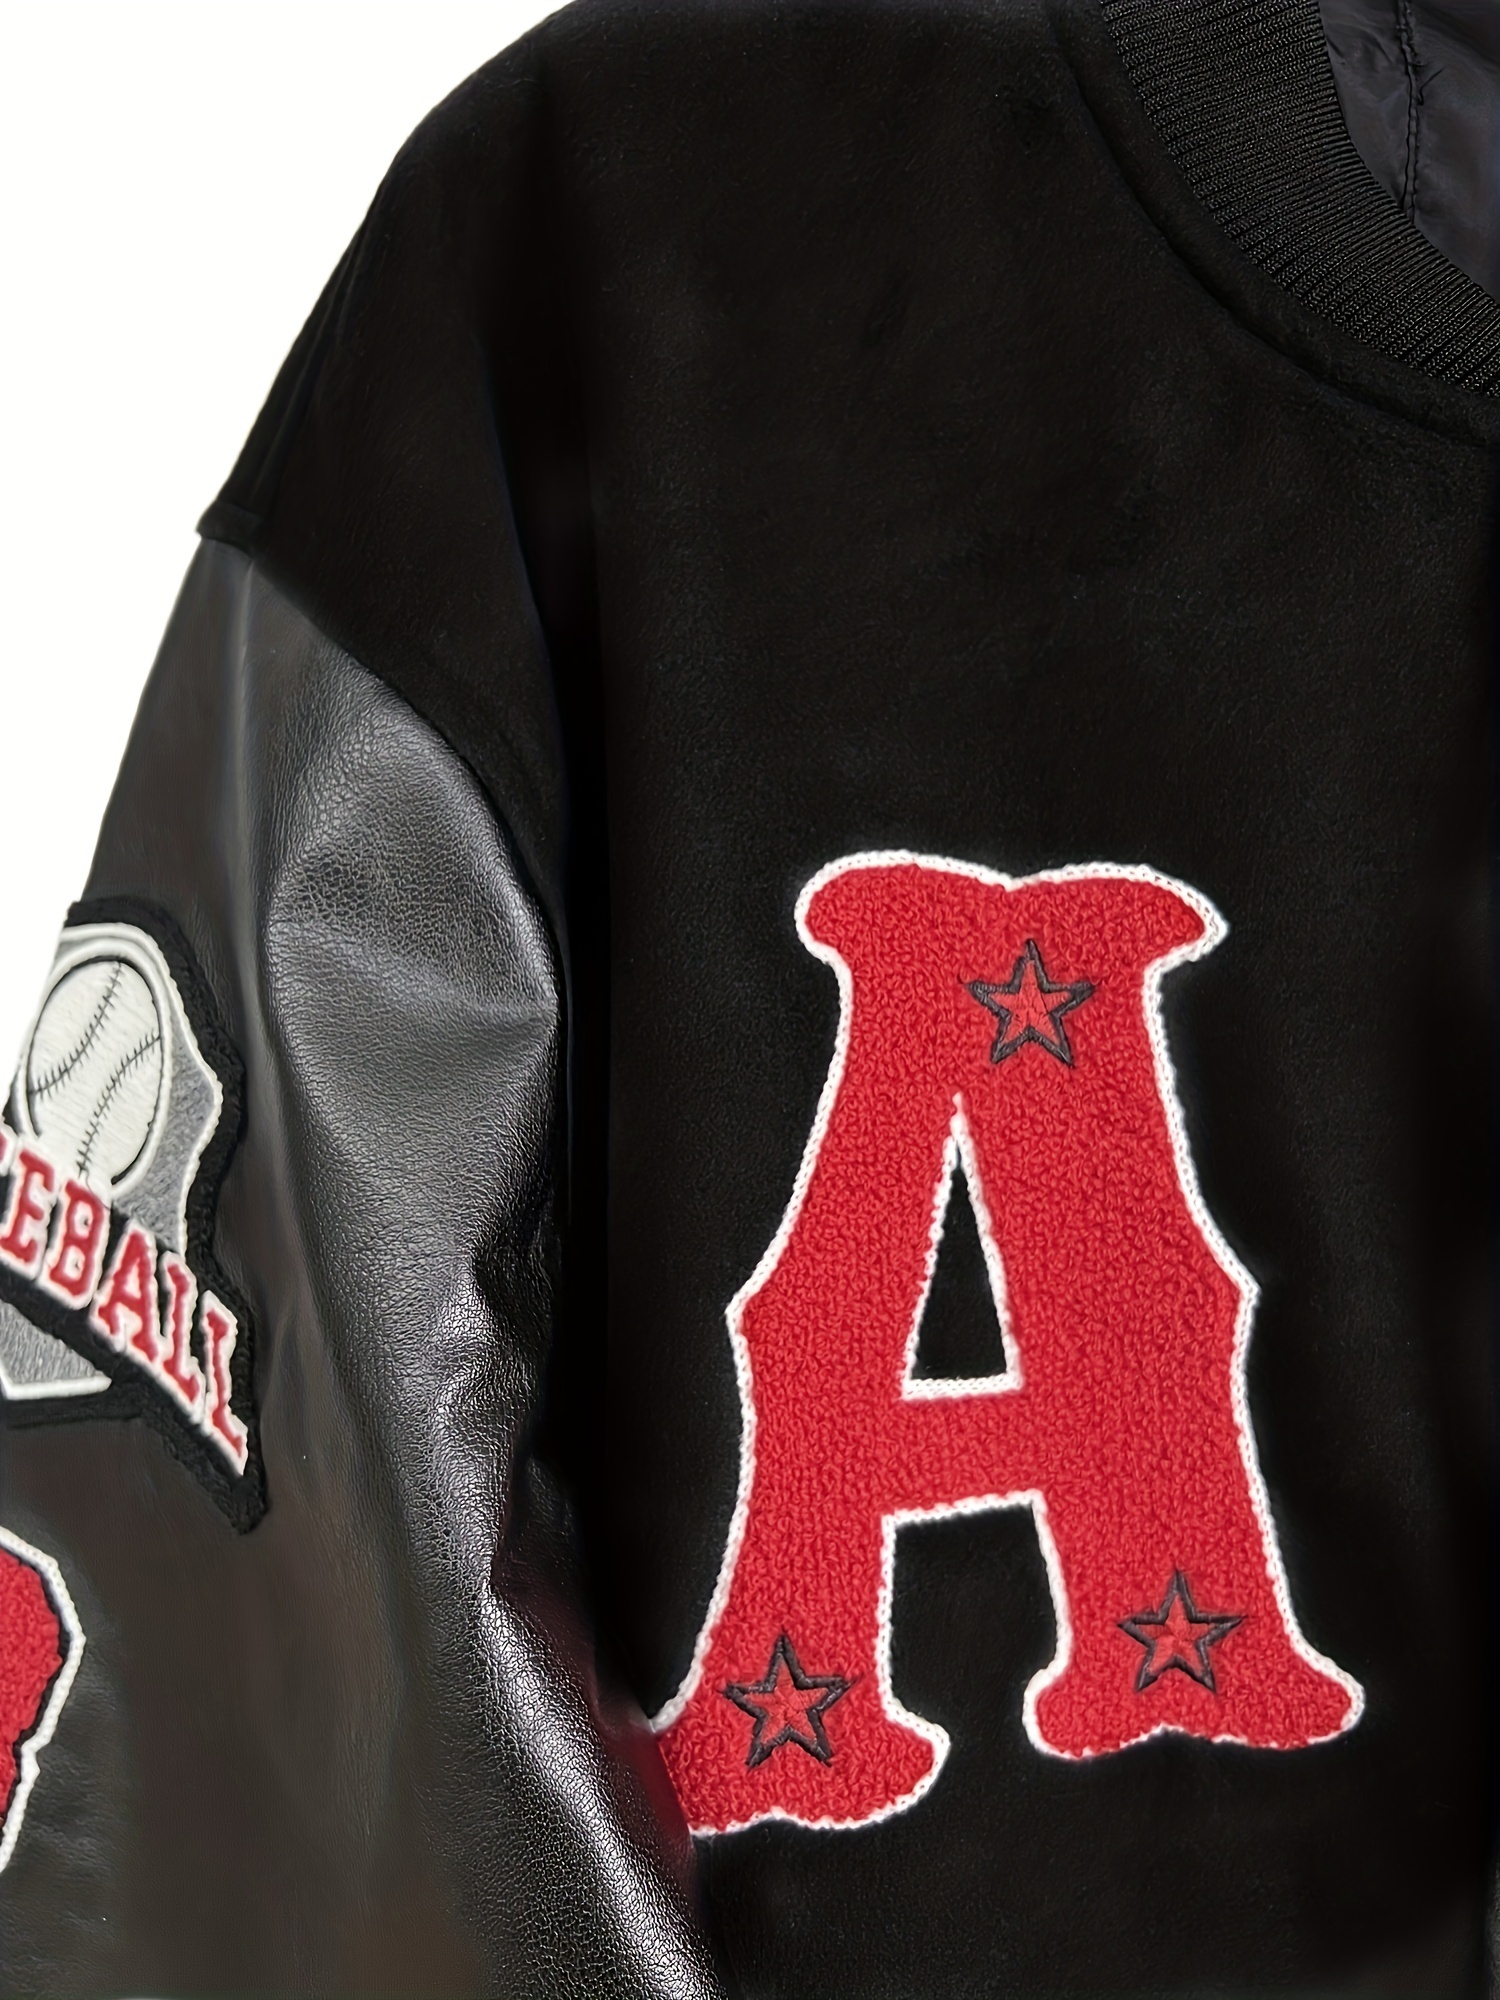 Unisex Embroidered Varsity Bomber Jacket Outerwear Sports Baseball